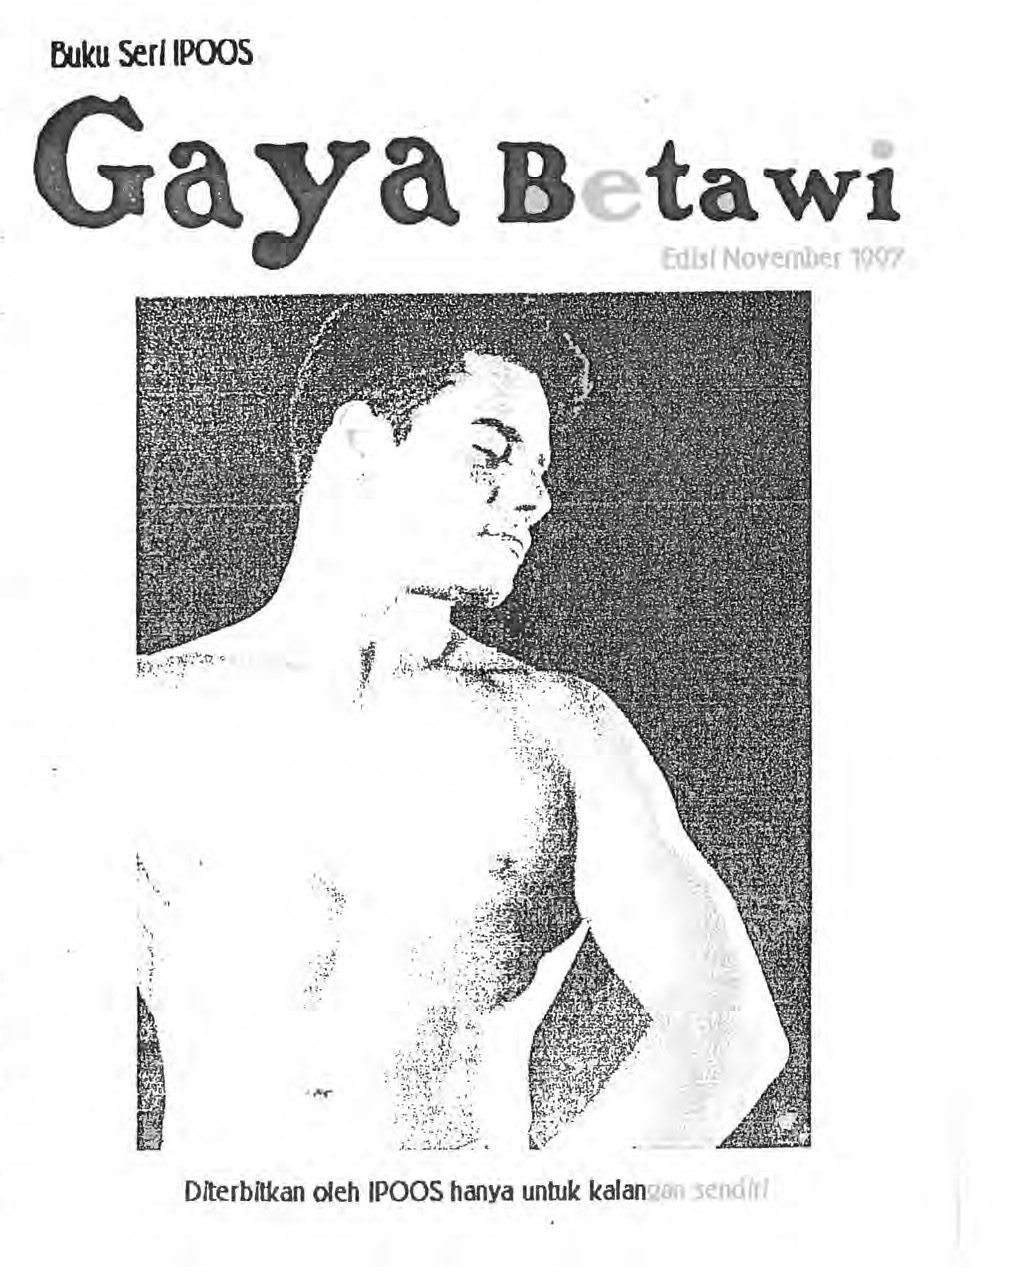 Buku Seri IPOOS GAYa Betawi Nov 1997